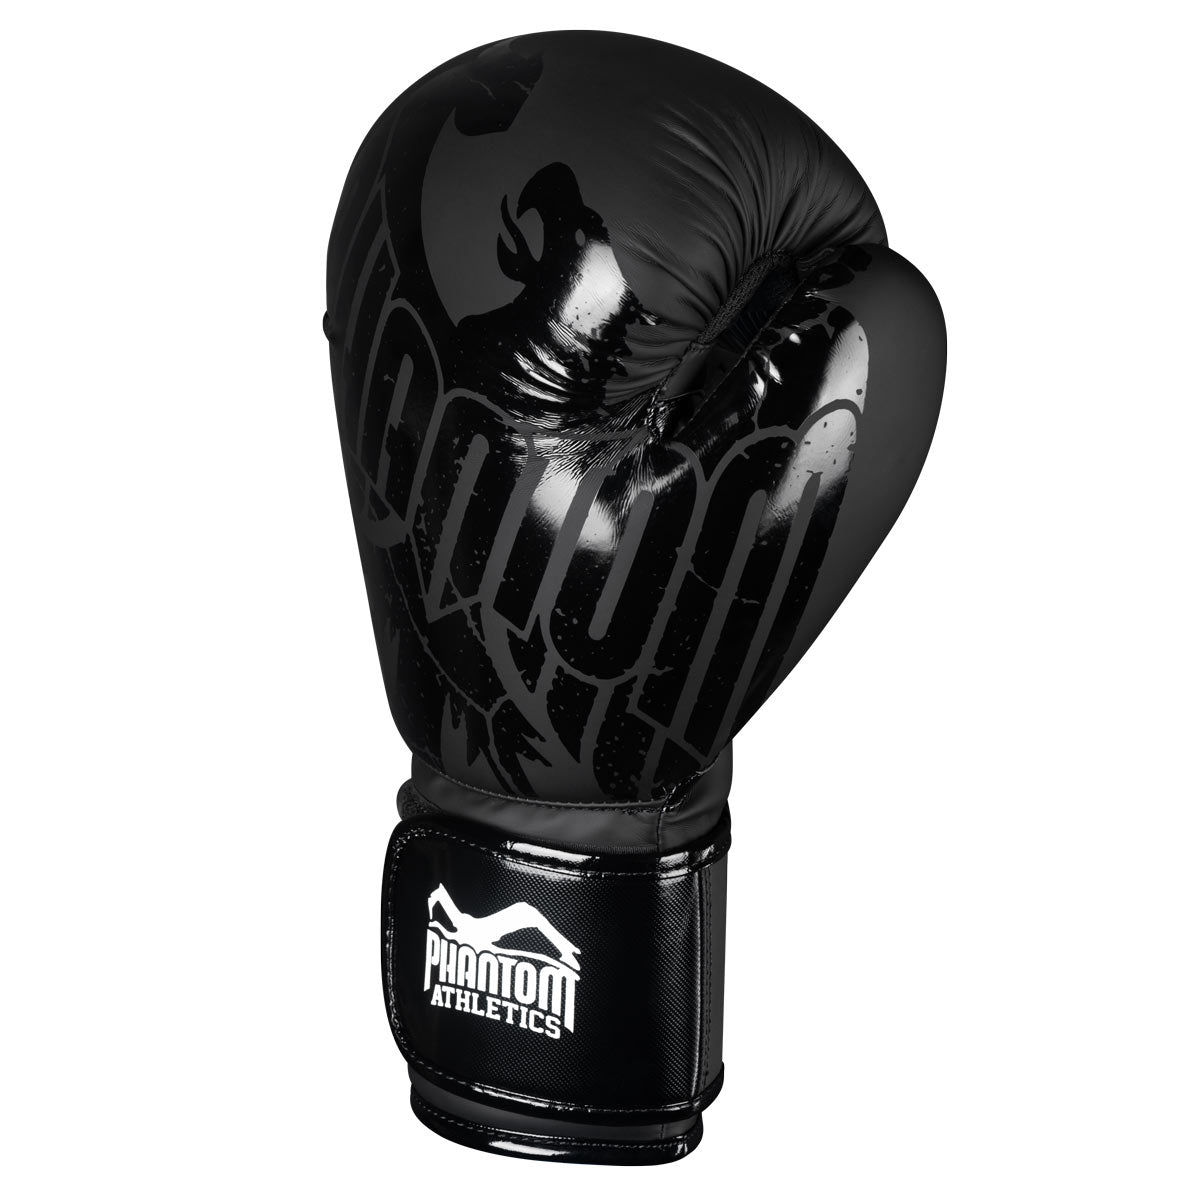 Die Phantom German Eagle Boxhandschuhe eignen sich perfekt für MMA, Boxen, Kickboxen oder Muay Thai.